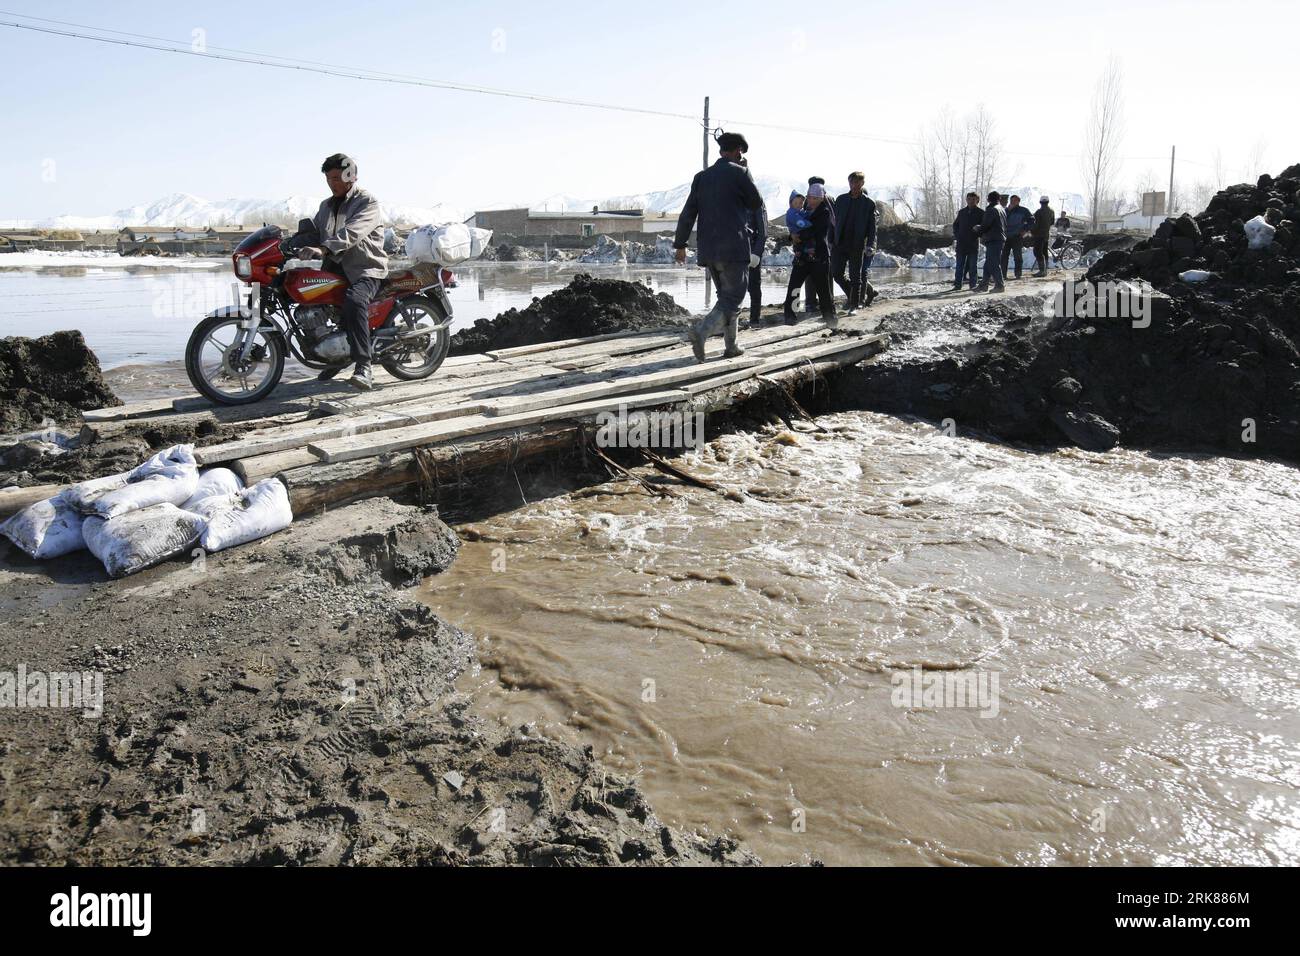 Bildnummer: 53991099 Datum: 27.04.2010 Copyright: imago/Xinhua (100428) -- ALTAI(XINGJIANG), 28. April 2010 (Xinhua) -- Anwohner gehen über eine Schichtbrücke über eine überflutete Landstraße, die durch Schneeschmelzwasser beschädigt wurde, im Fuyun County in Altai, Nordwestchina, Autonome Region Xinjiang Uygur, 27. April 2010. Die Überschwemmung hatte Schäden an einigen Feldern und Häusern in der Gegend verursacht. (Xinhua/Ding Ning) (wyx) (10)CHINA-XINJIANG-ALTAI-SNOW MELT FLOOD (CN) PUBLICATIONxNOTxINxCHN Gesellschaft Wetter Schnee Schneeschmelze Überschwemmung kbdig xcb 2010 quer Bildnummer 53991099 Datum 27 04 2010 Copyright Stockfoto